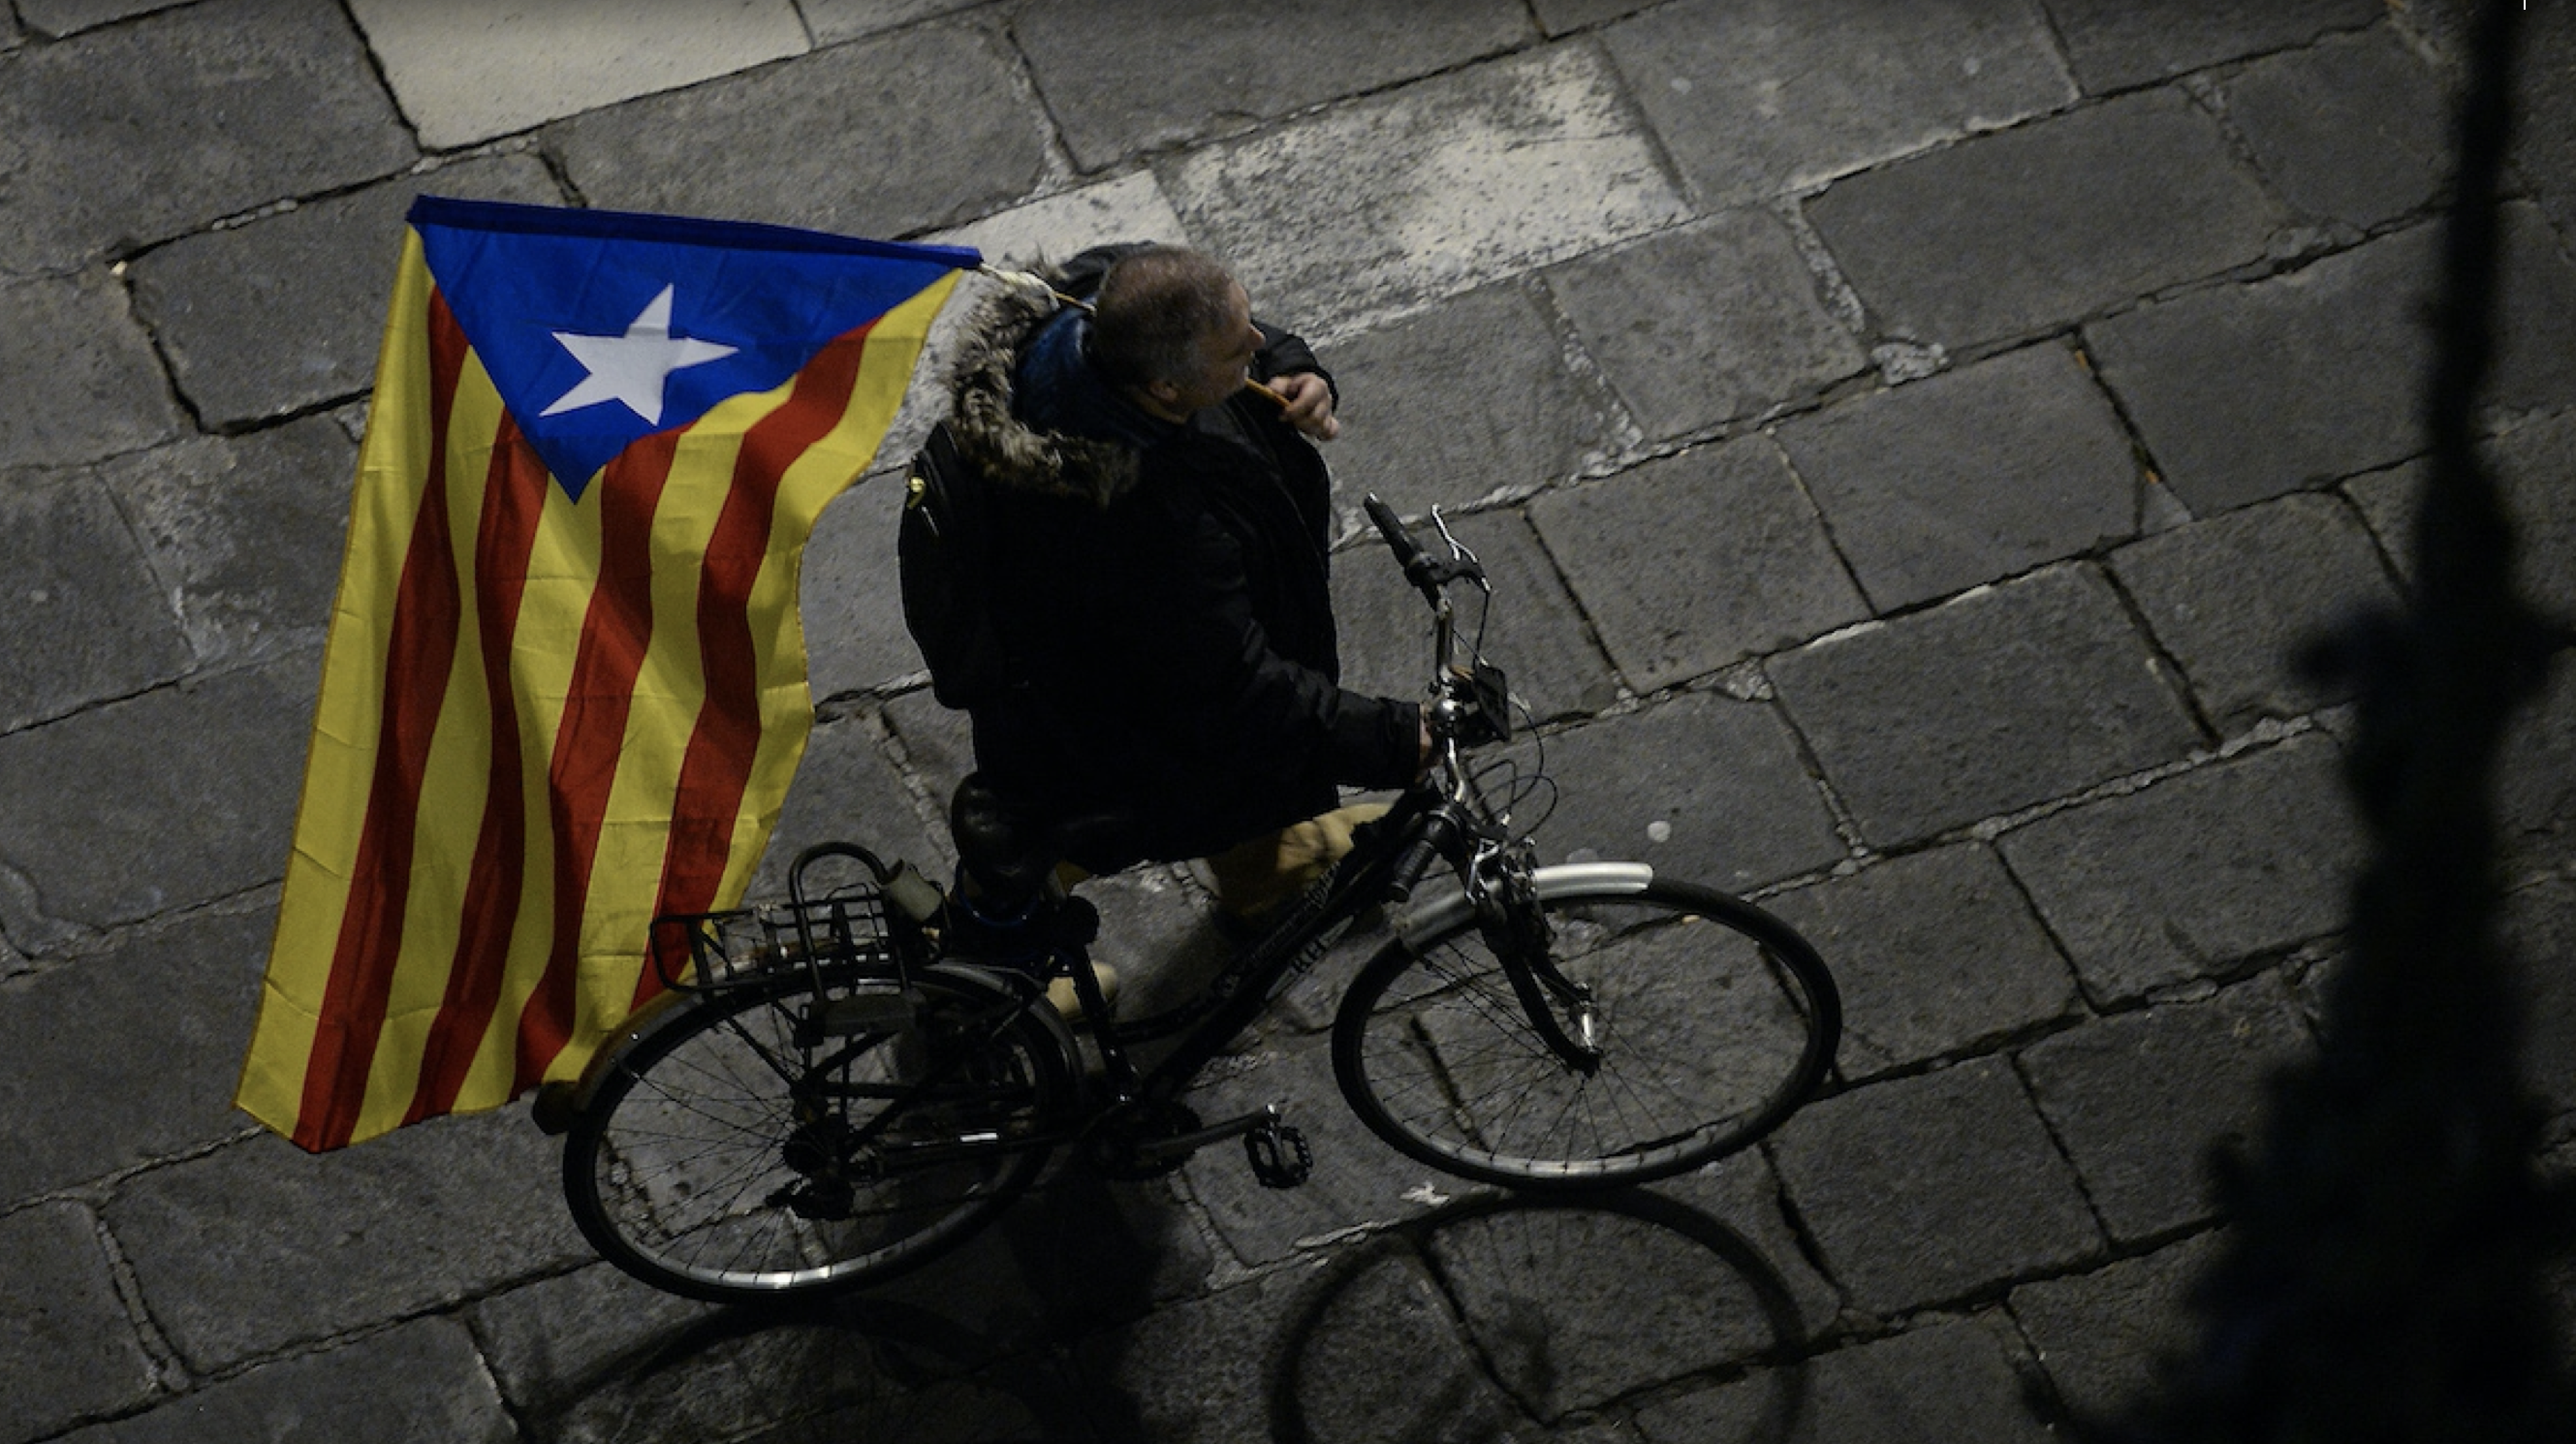 شكلت محاولة انفصال كاتالونيا احدى اسوأ الازمات السياسية التي شهدتها اسبانيا منذ سقوط ديكتاتورية فرانكو